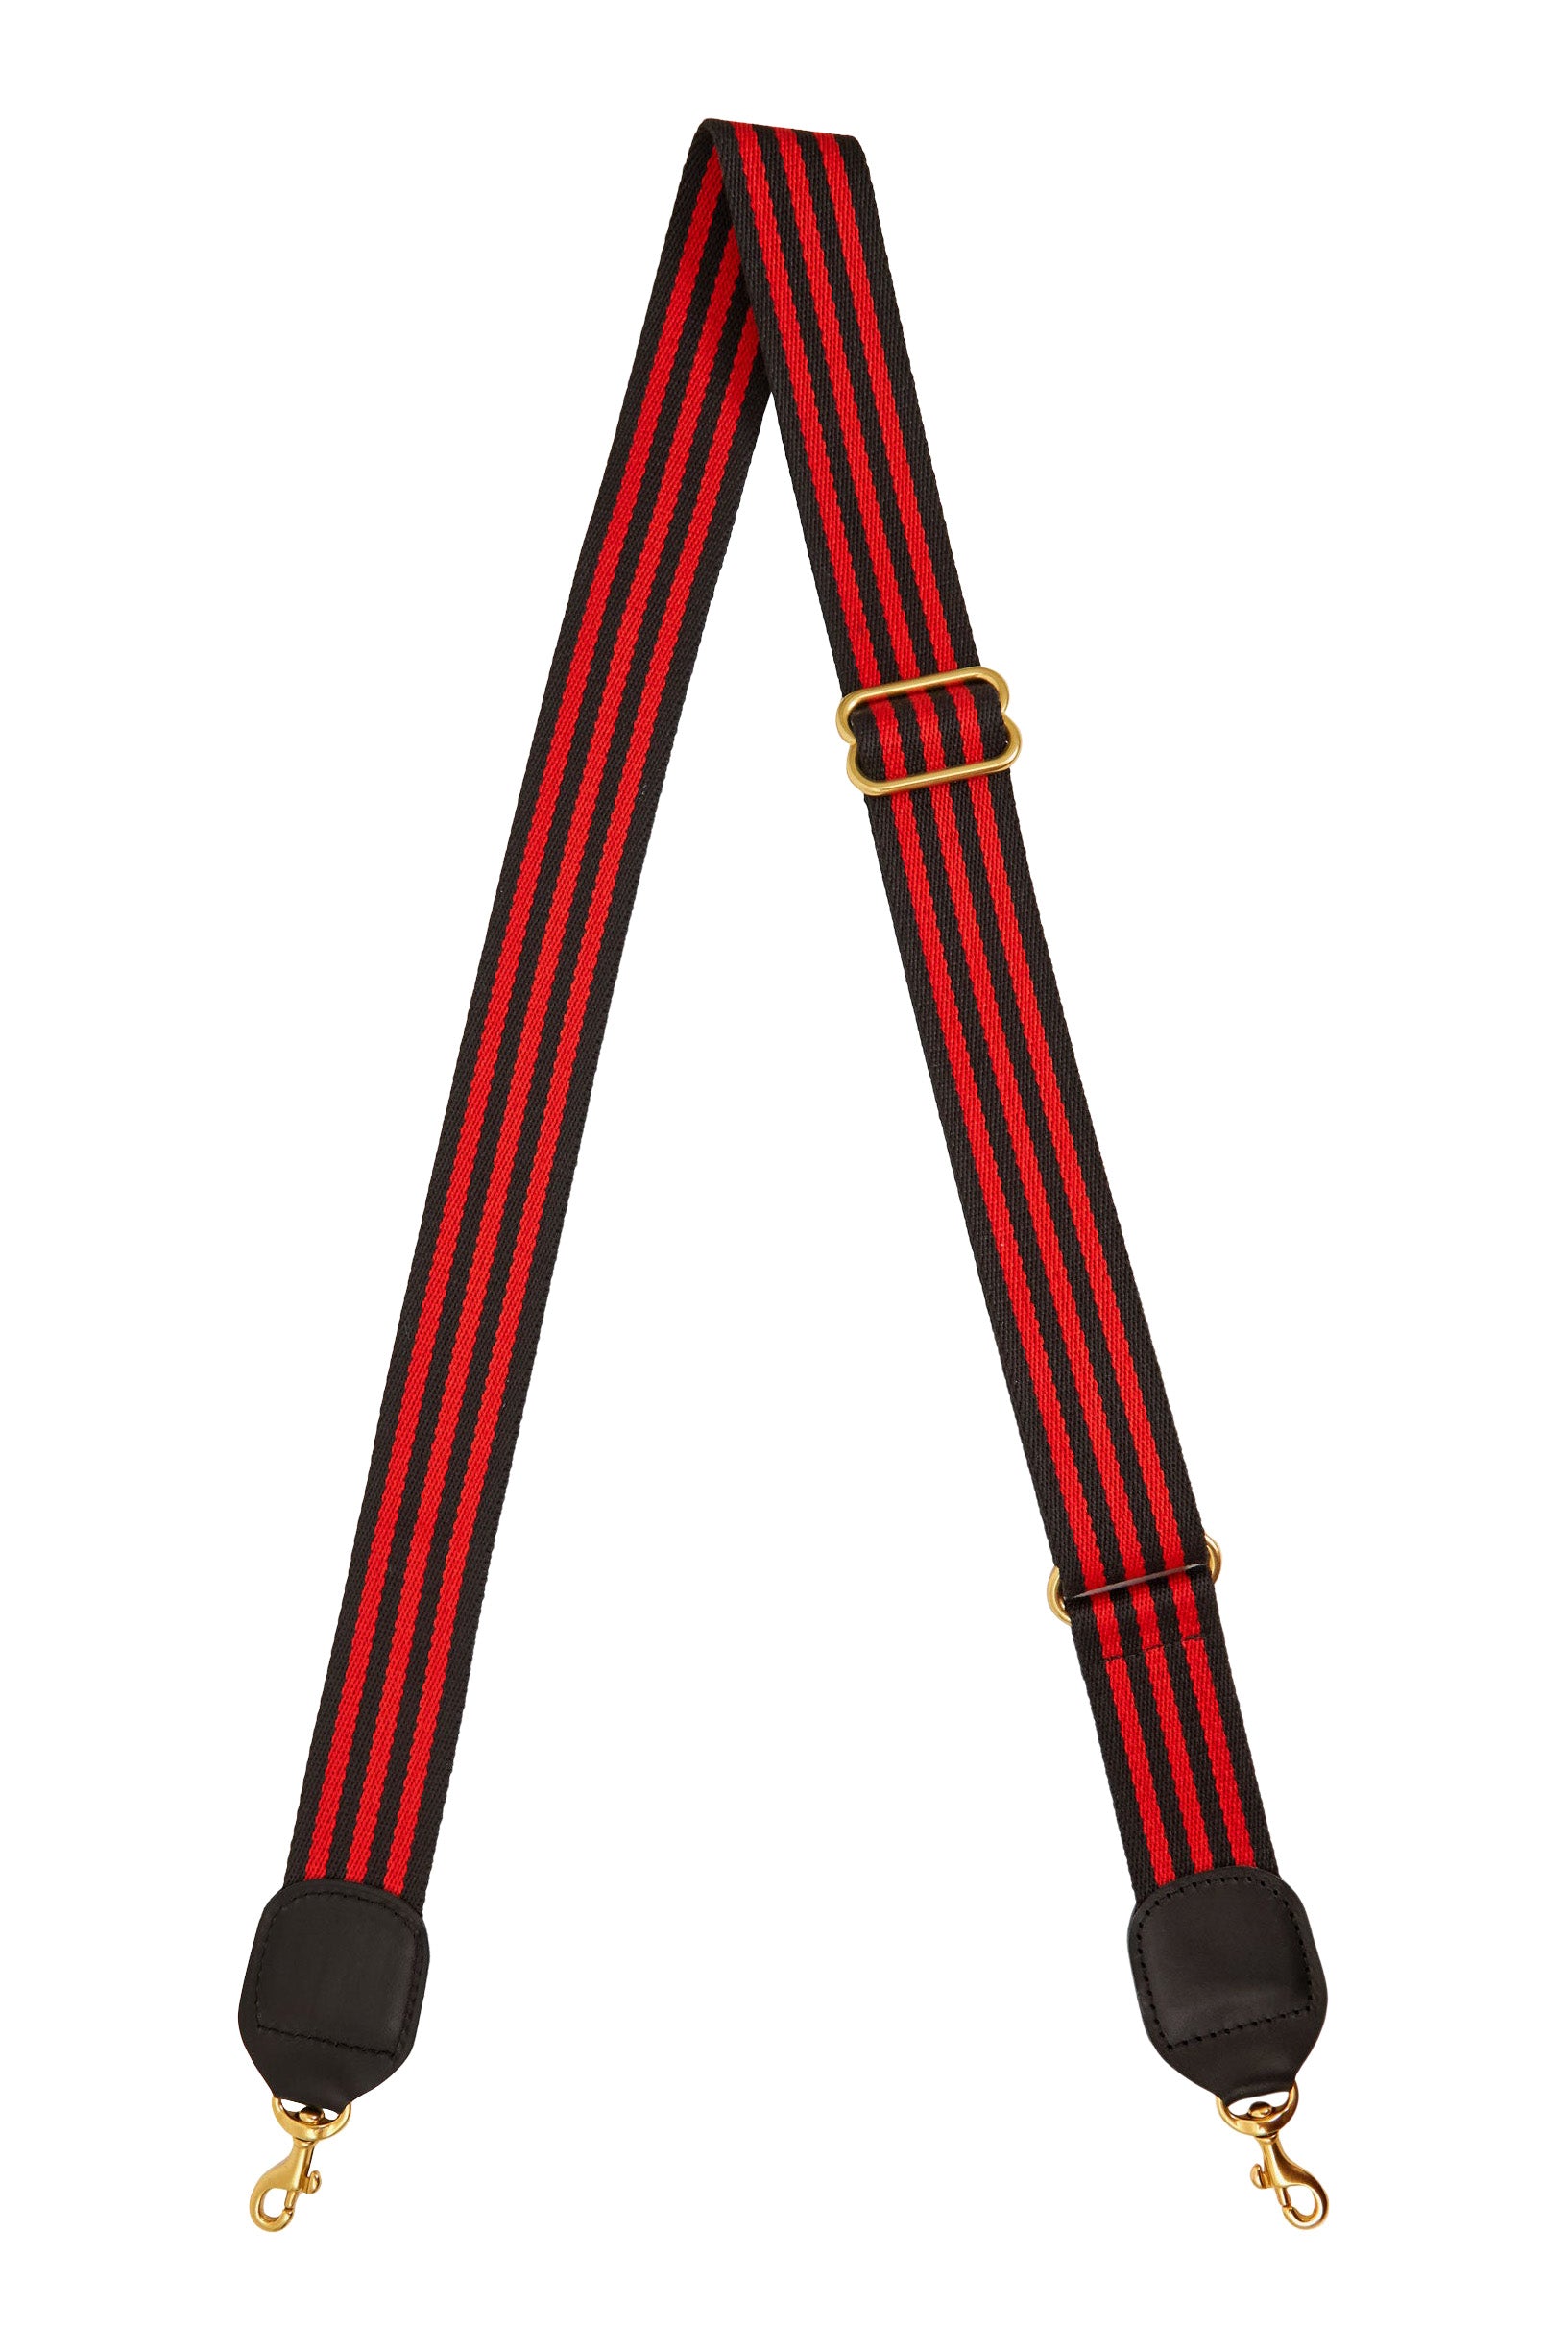 Clare V. Adjustable Crossbody Strap in Black Red Mini Stripe